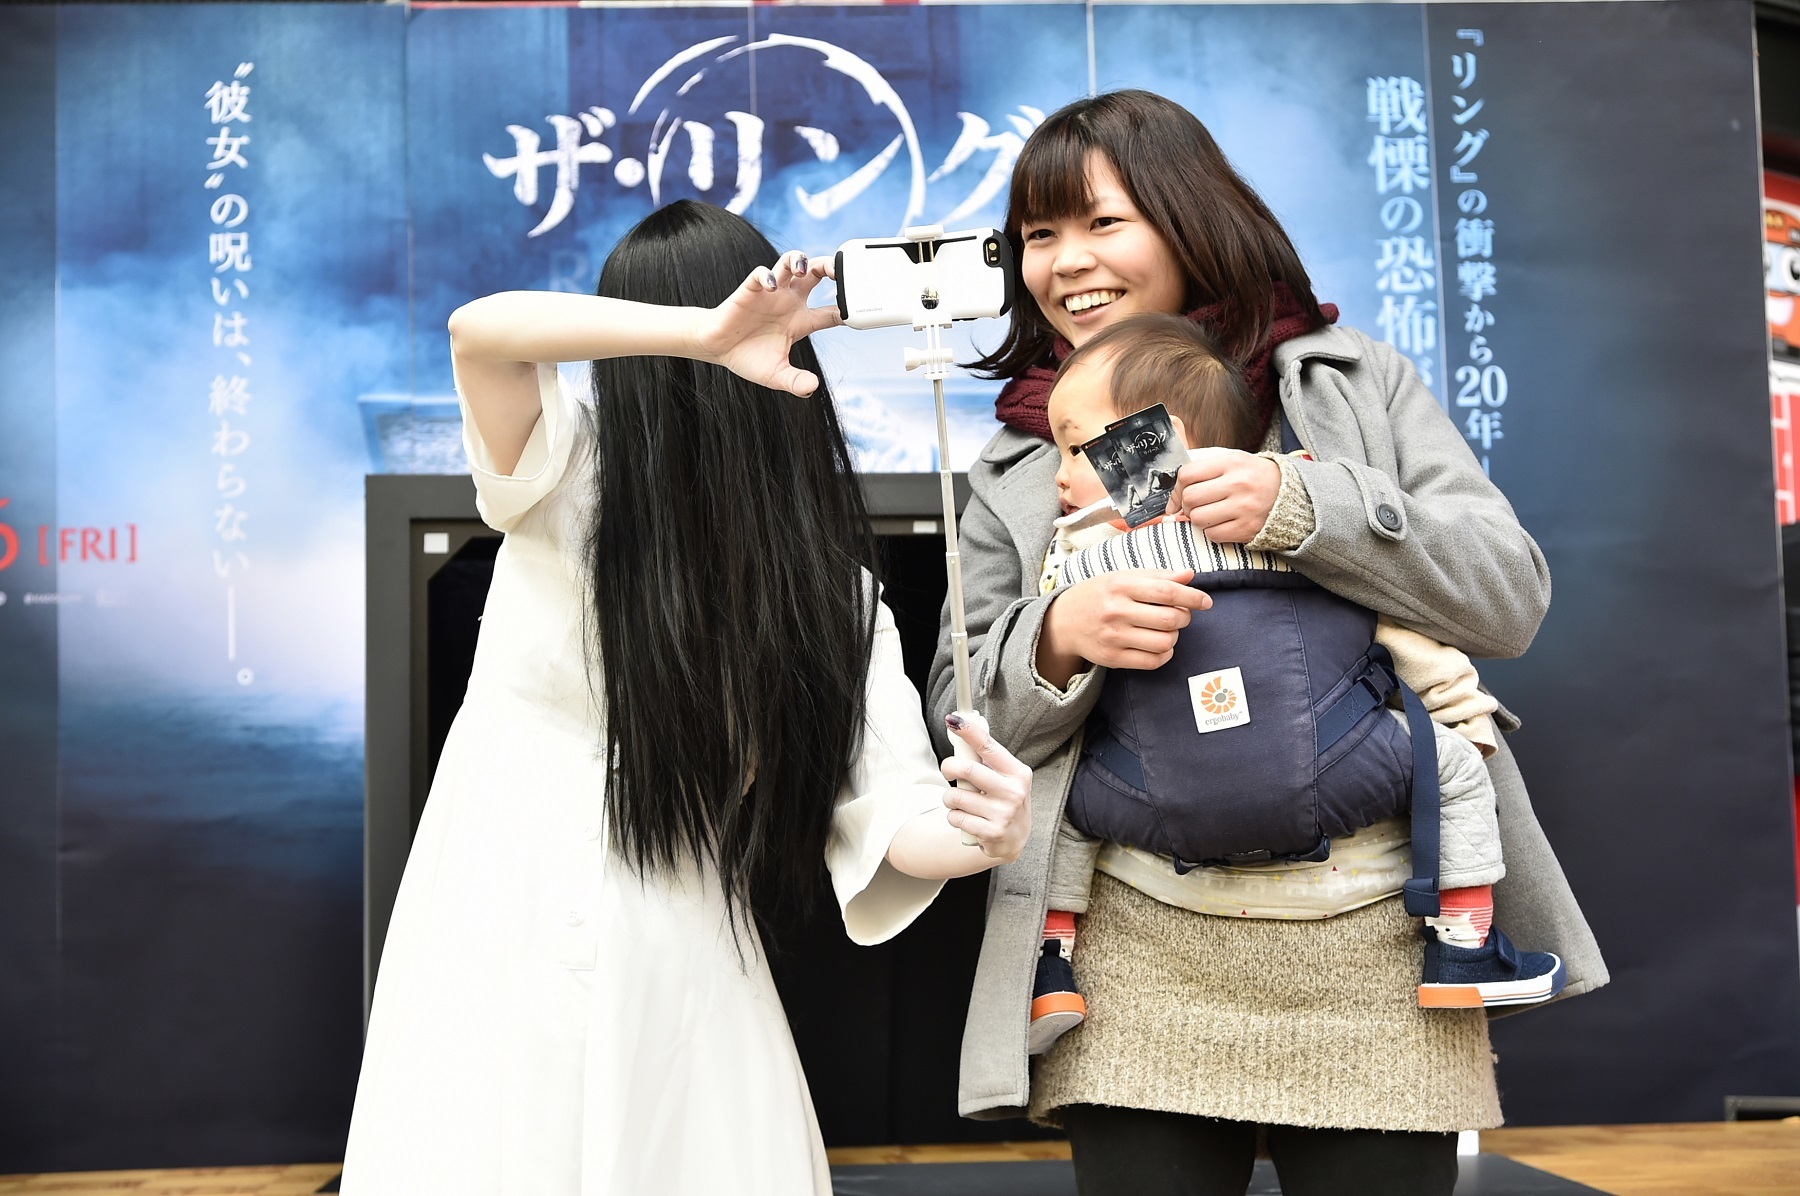 貞子のほっこりサプライズ演出に かわいい の声も ザ リング リバース 公開記念で大阪 ヨドバシ梅田に降臨 Spice エンタメ特化型情報メディア スパイス